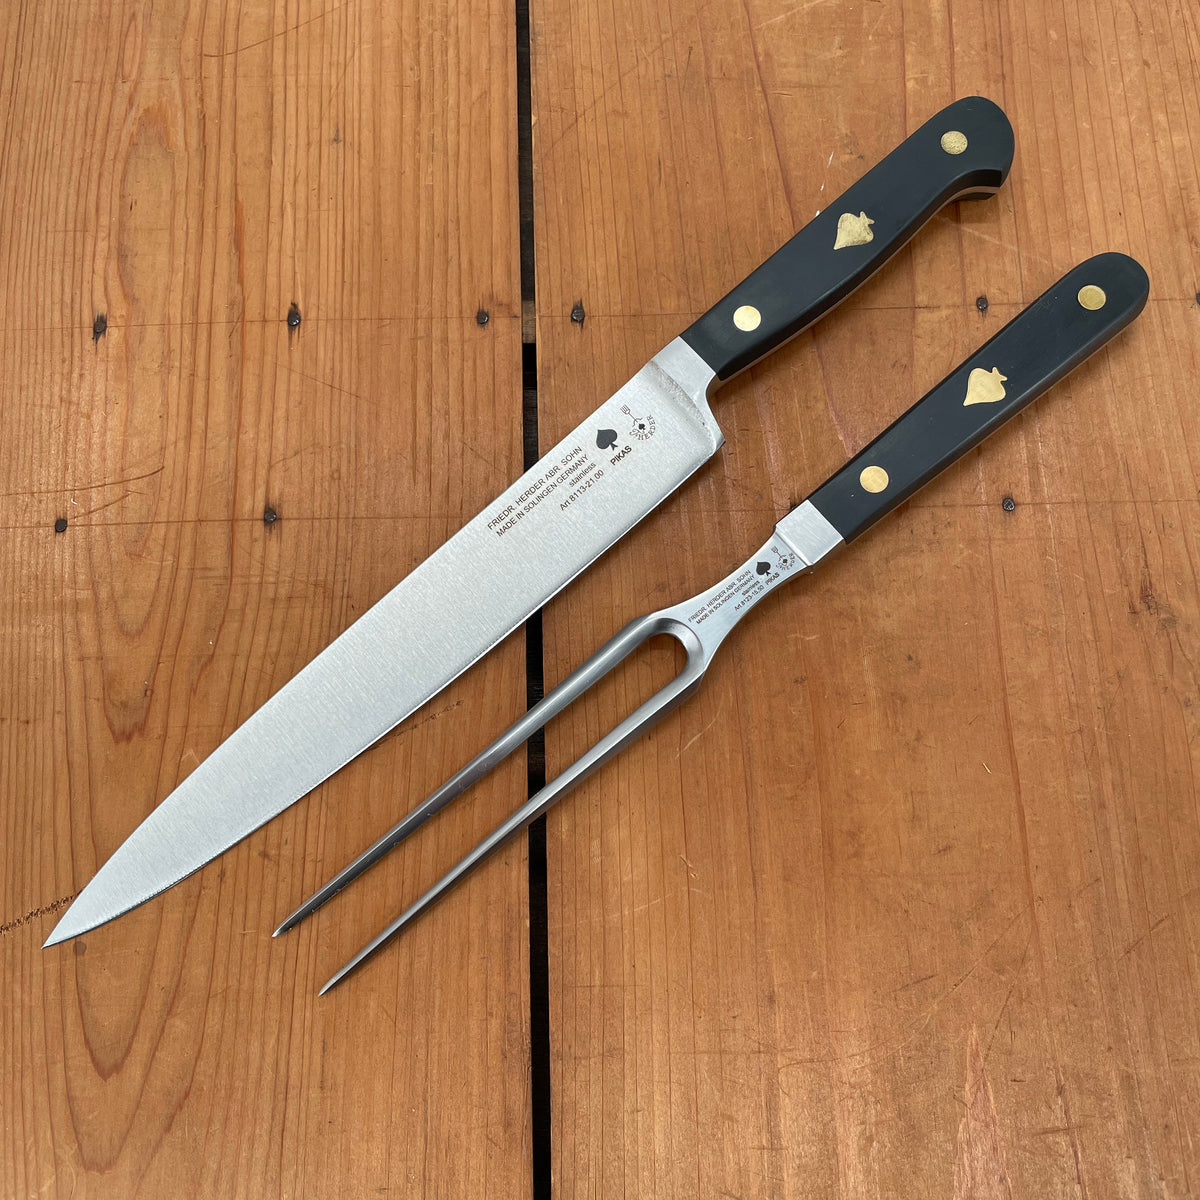 Friedr Herder Carving Set 8” Knife & Fork in Walnut Drawer Storage Box